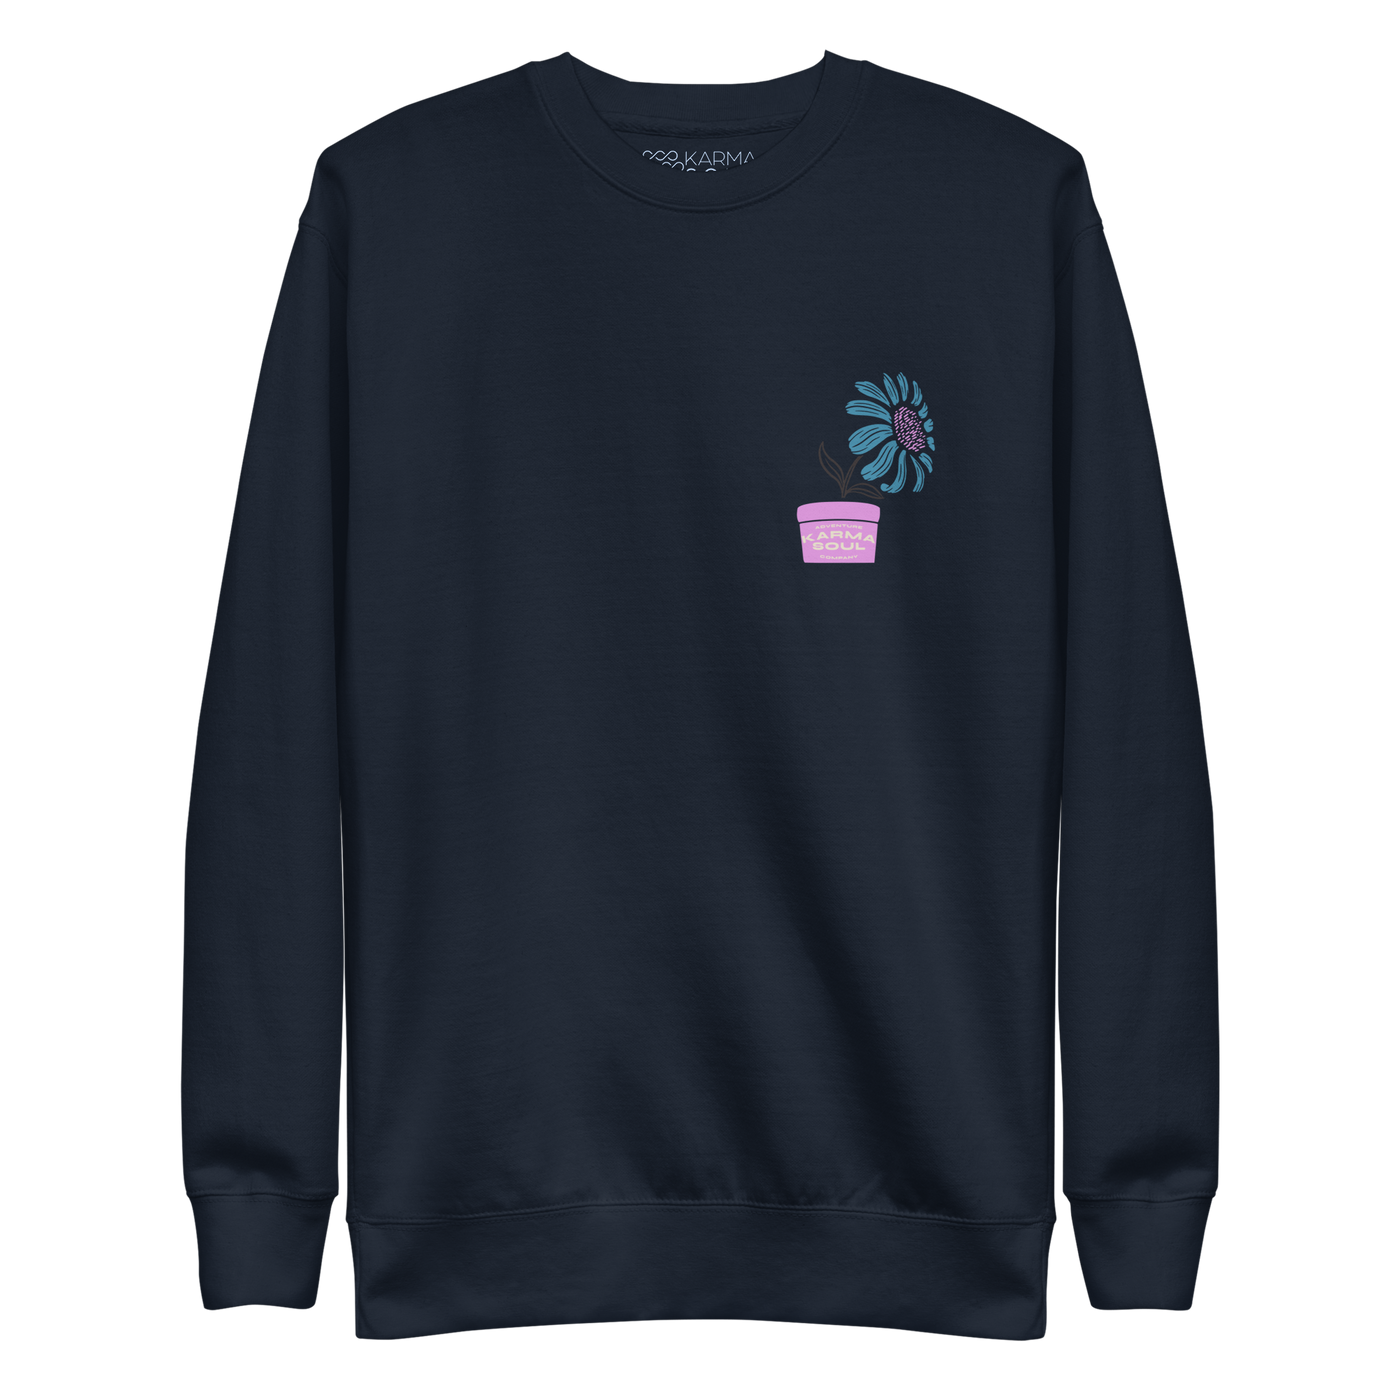 Flower Truck Women's Sweatshirt